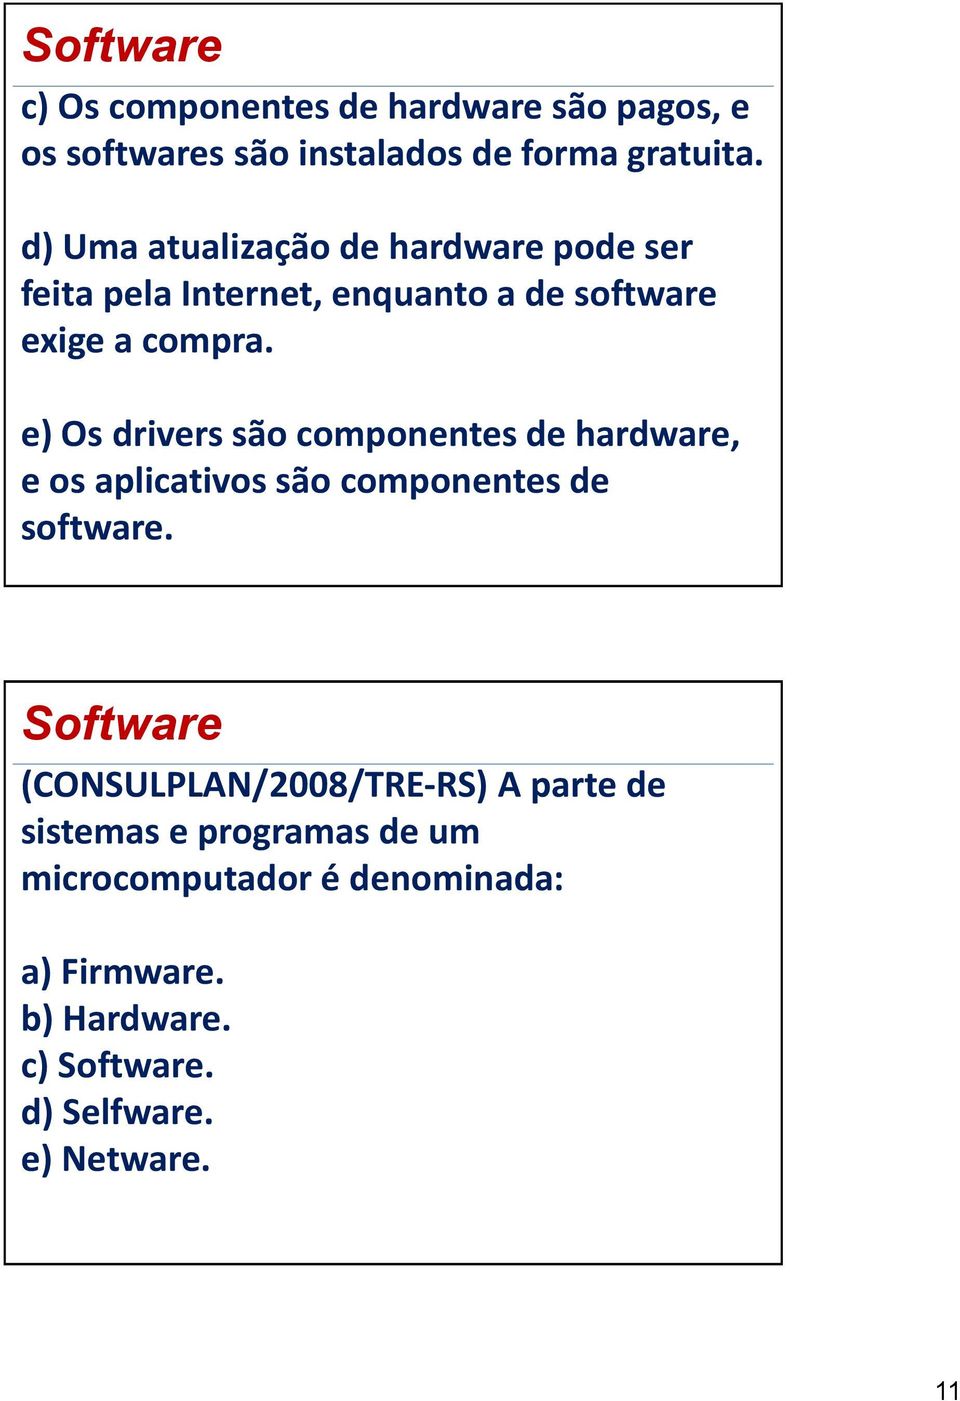 e) Os drivers são componentes de hardware, e os aplicativos são componentes de software.